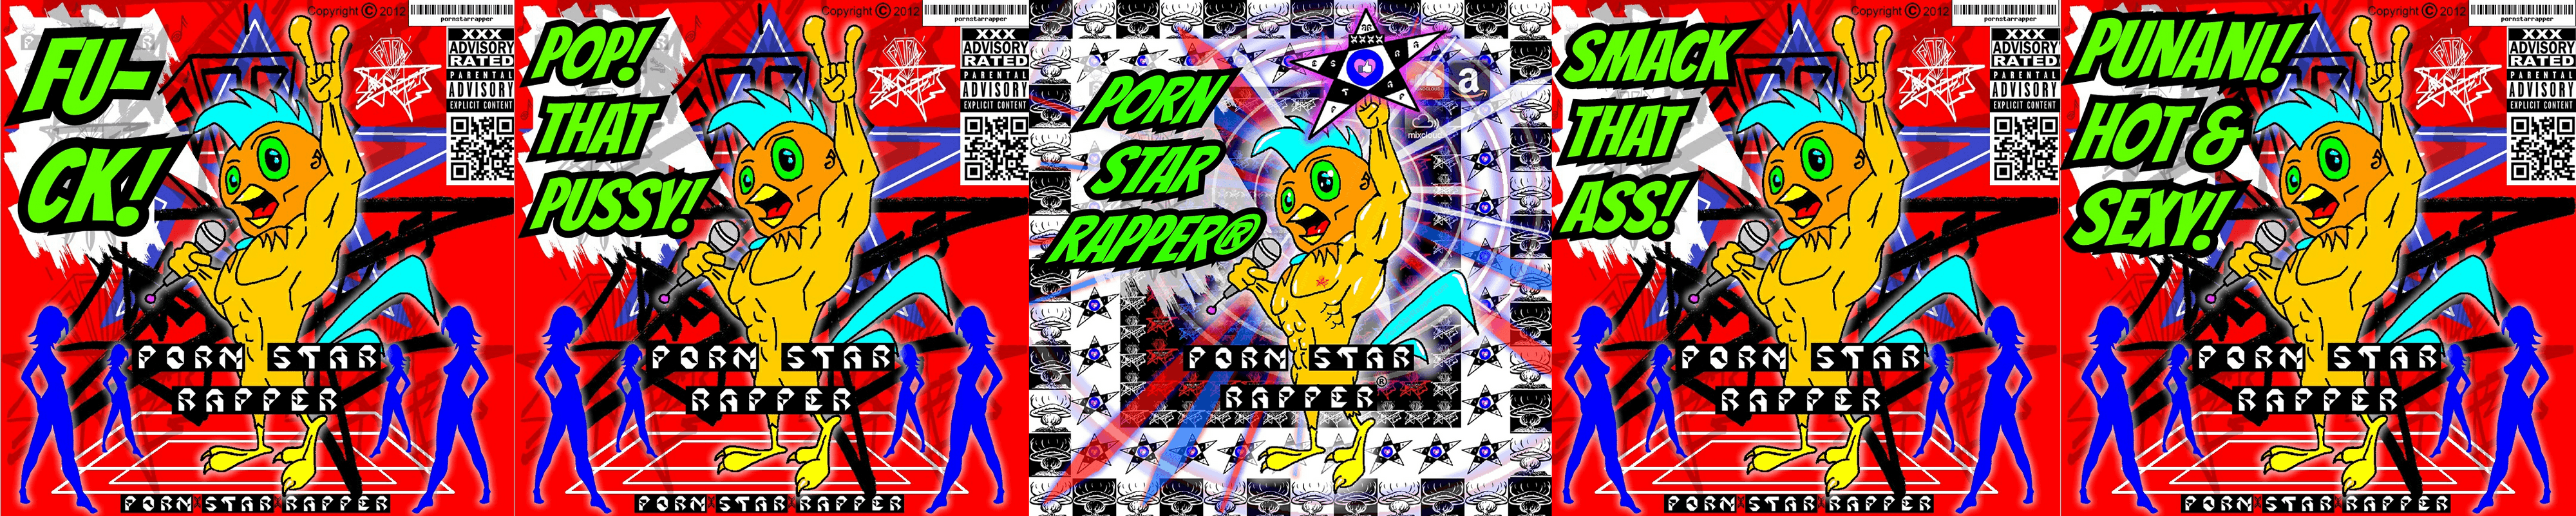 PornStarRapper バナー